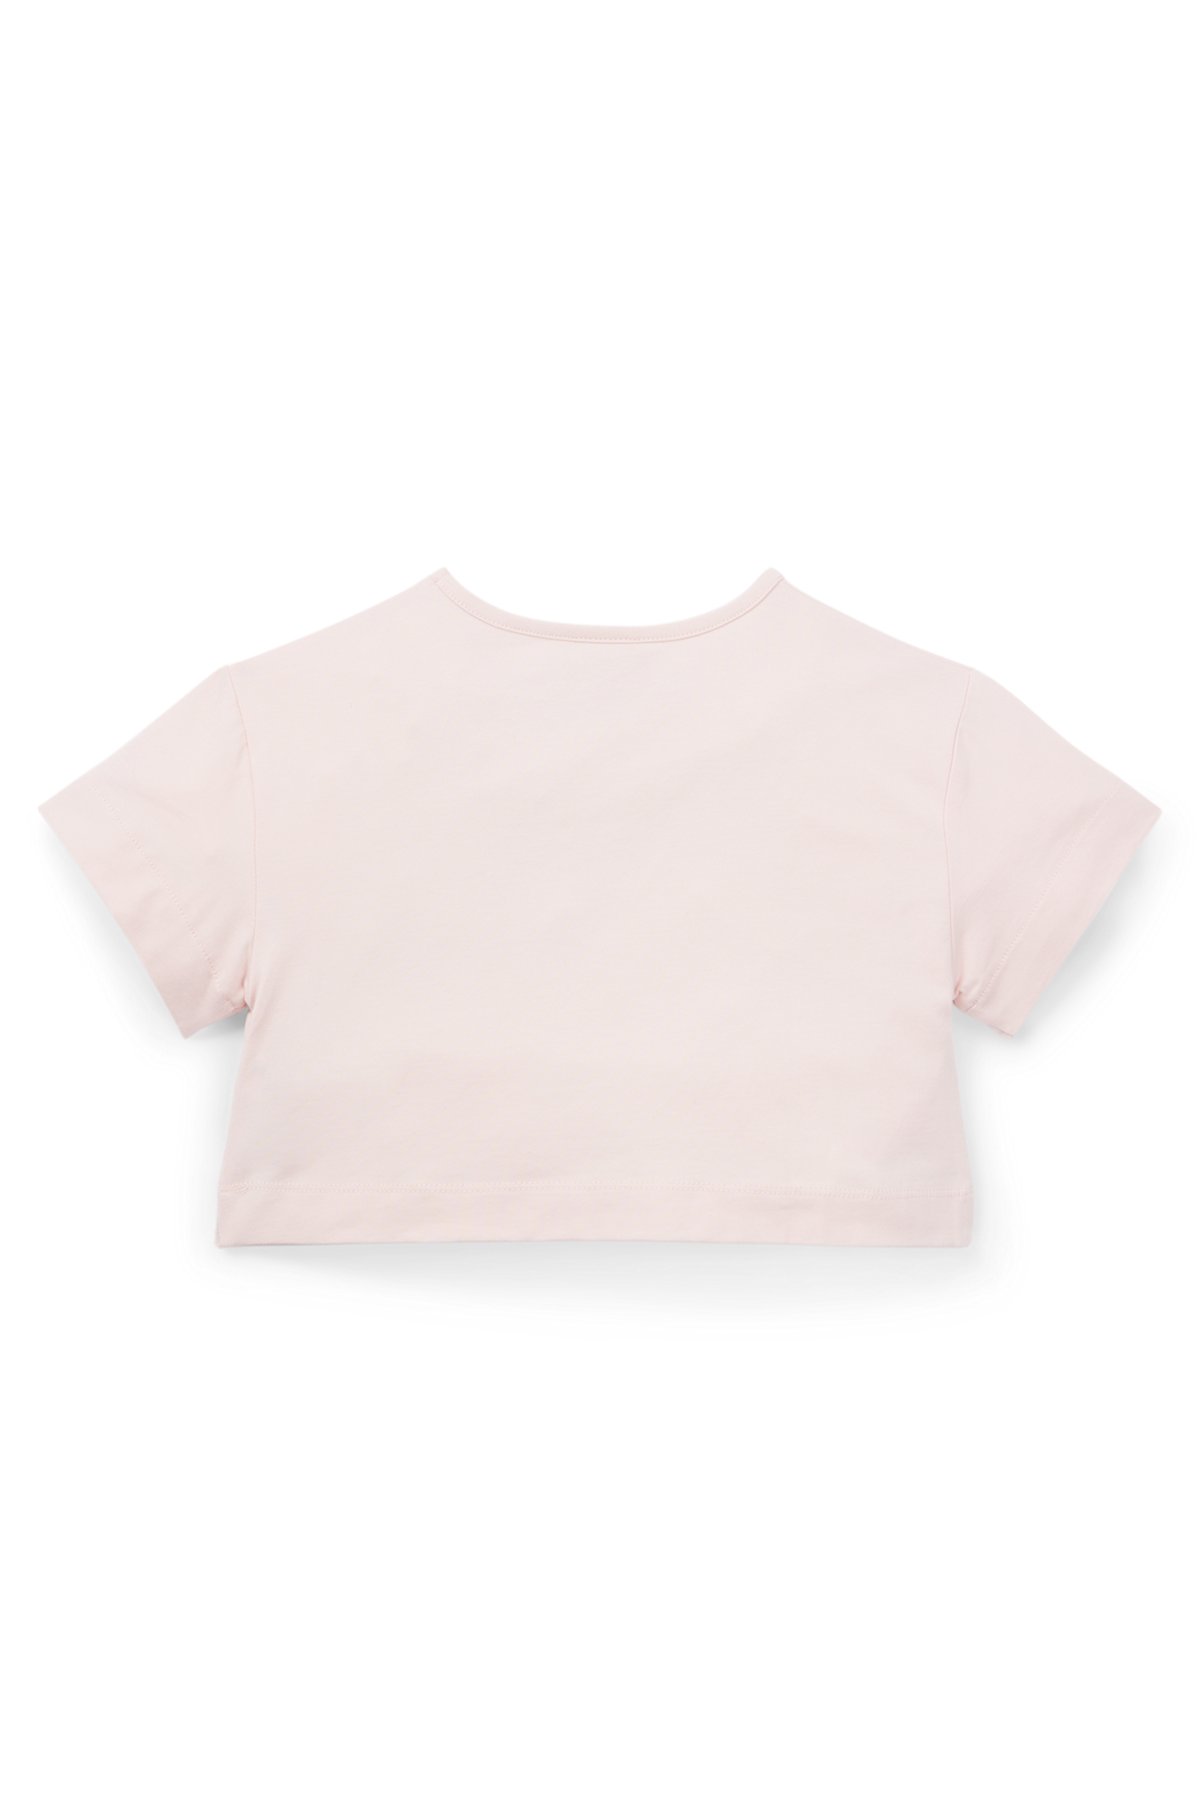 キッズ オーバーサイズフィット ストレッチコットン Tシャツ ロゴアートワーク, ライトピンク